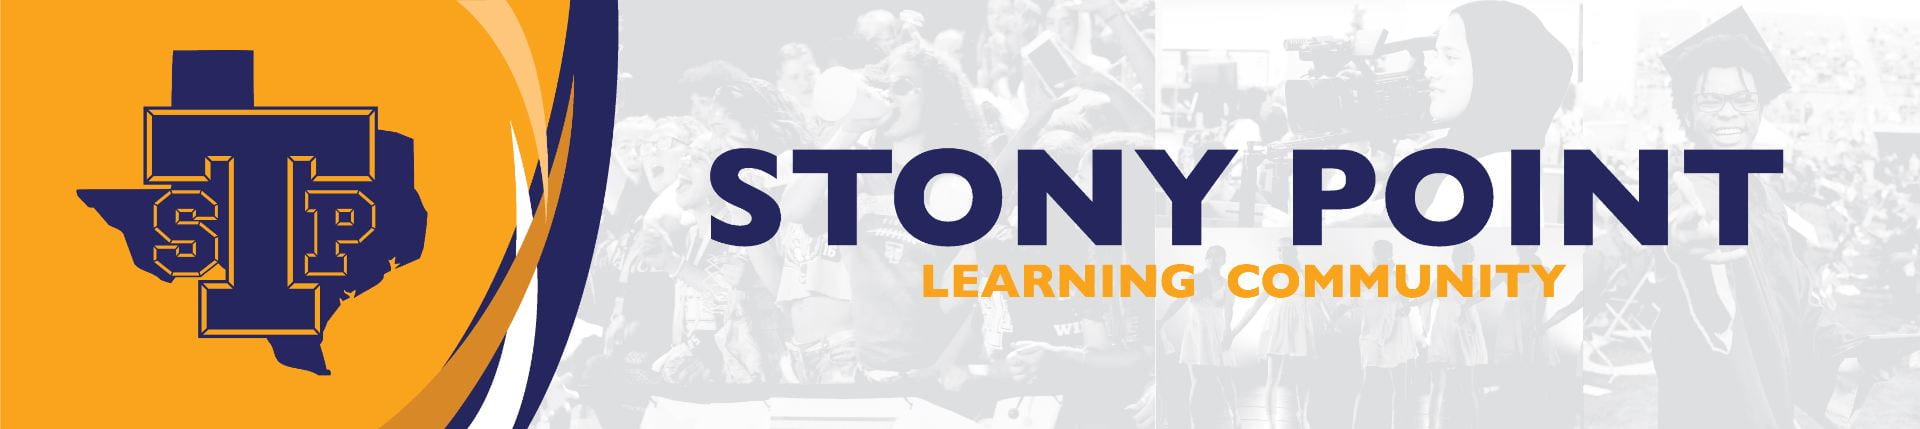 Stony Point Learning Community